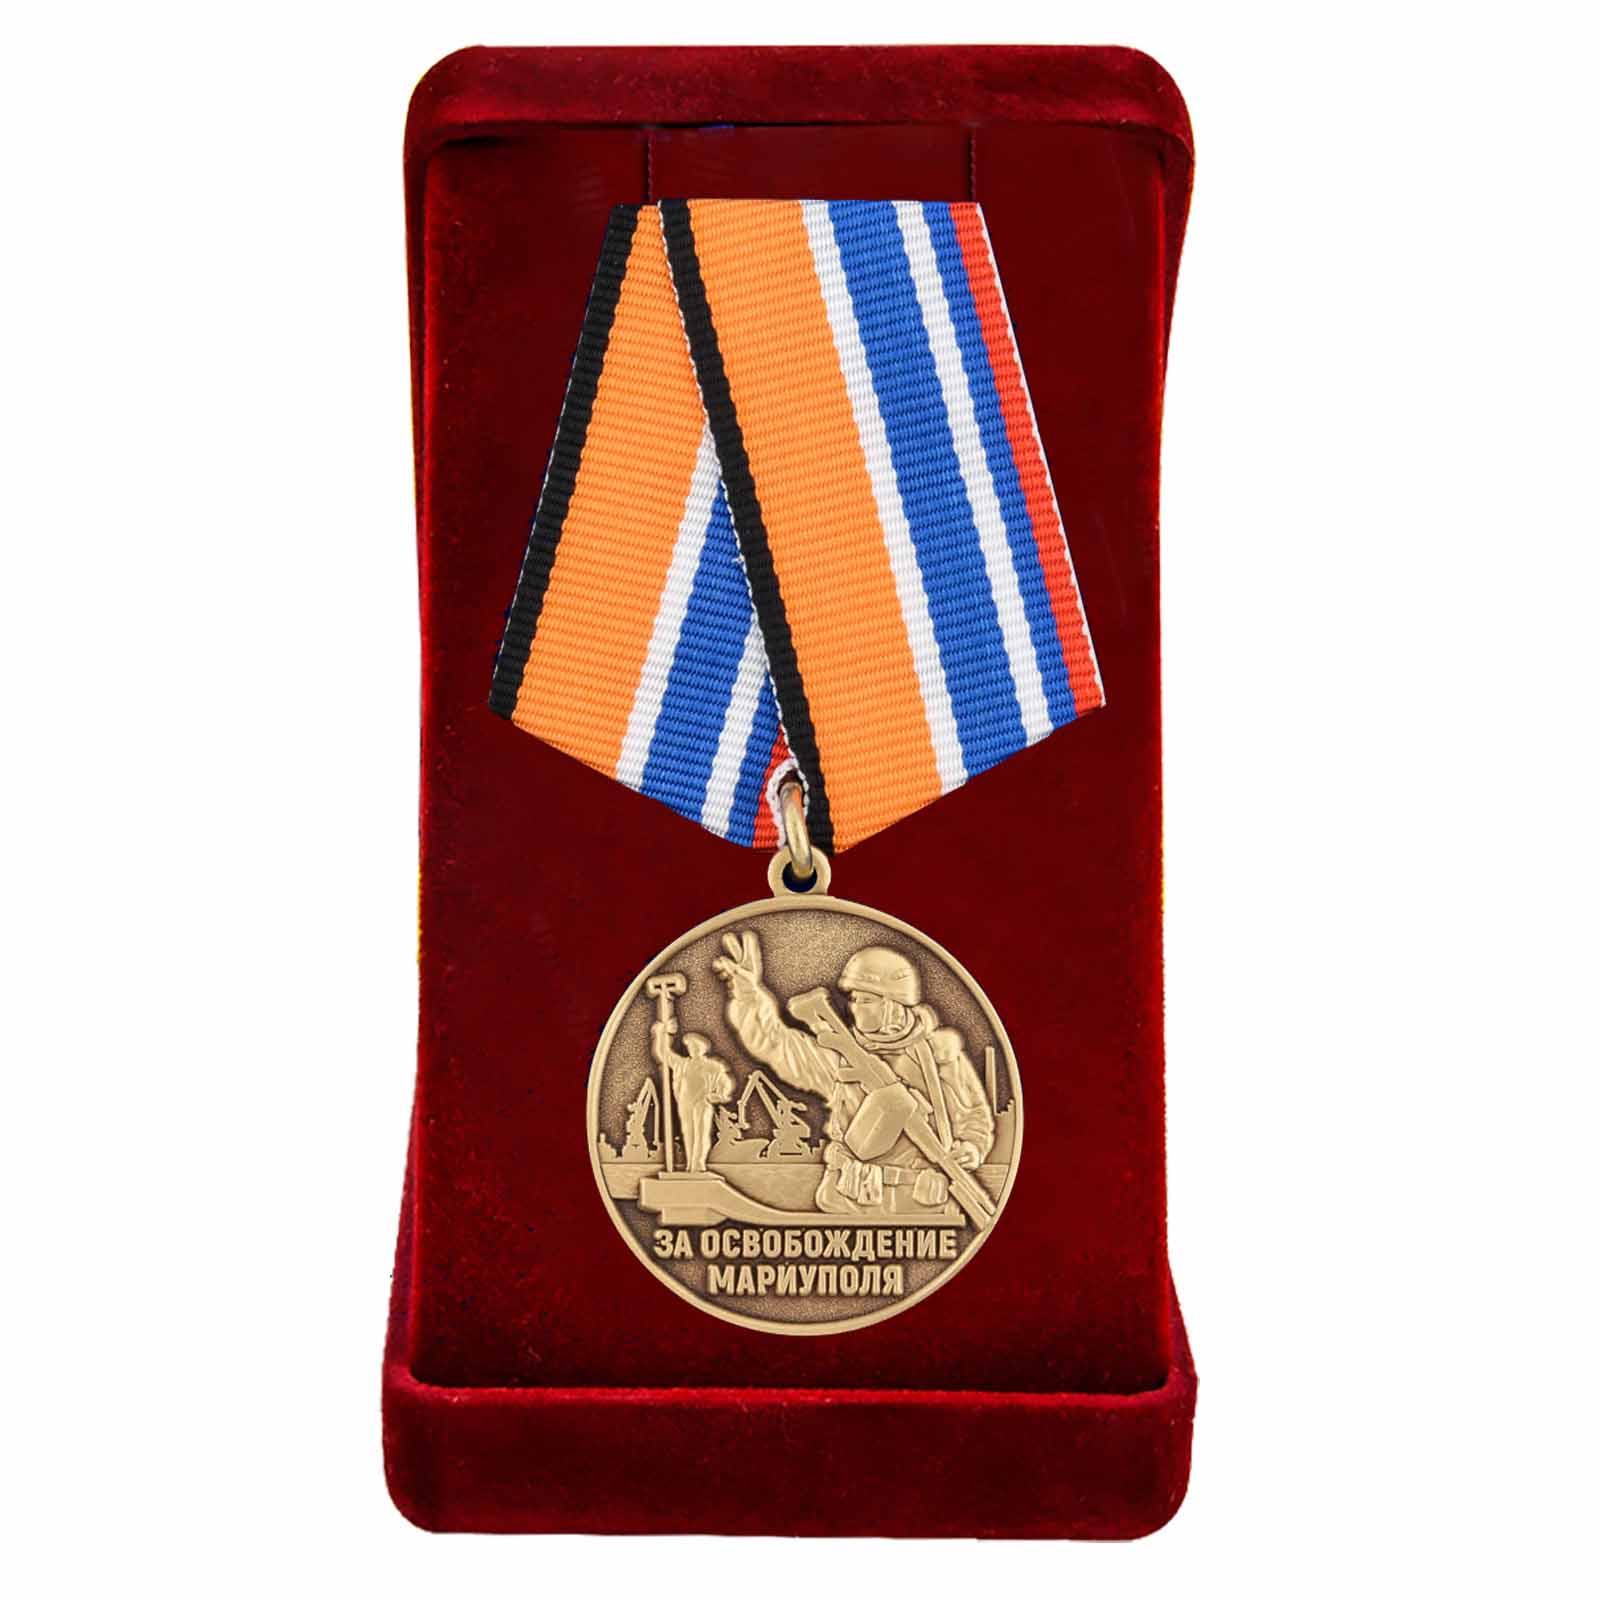 Купить медаль Z V За освобождение Мариуполя по лучшей цене